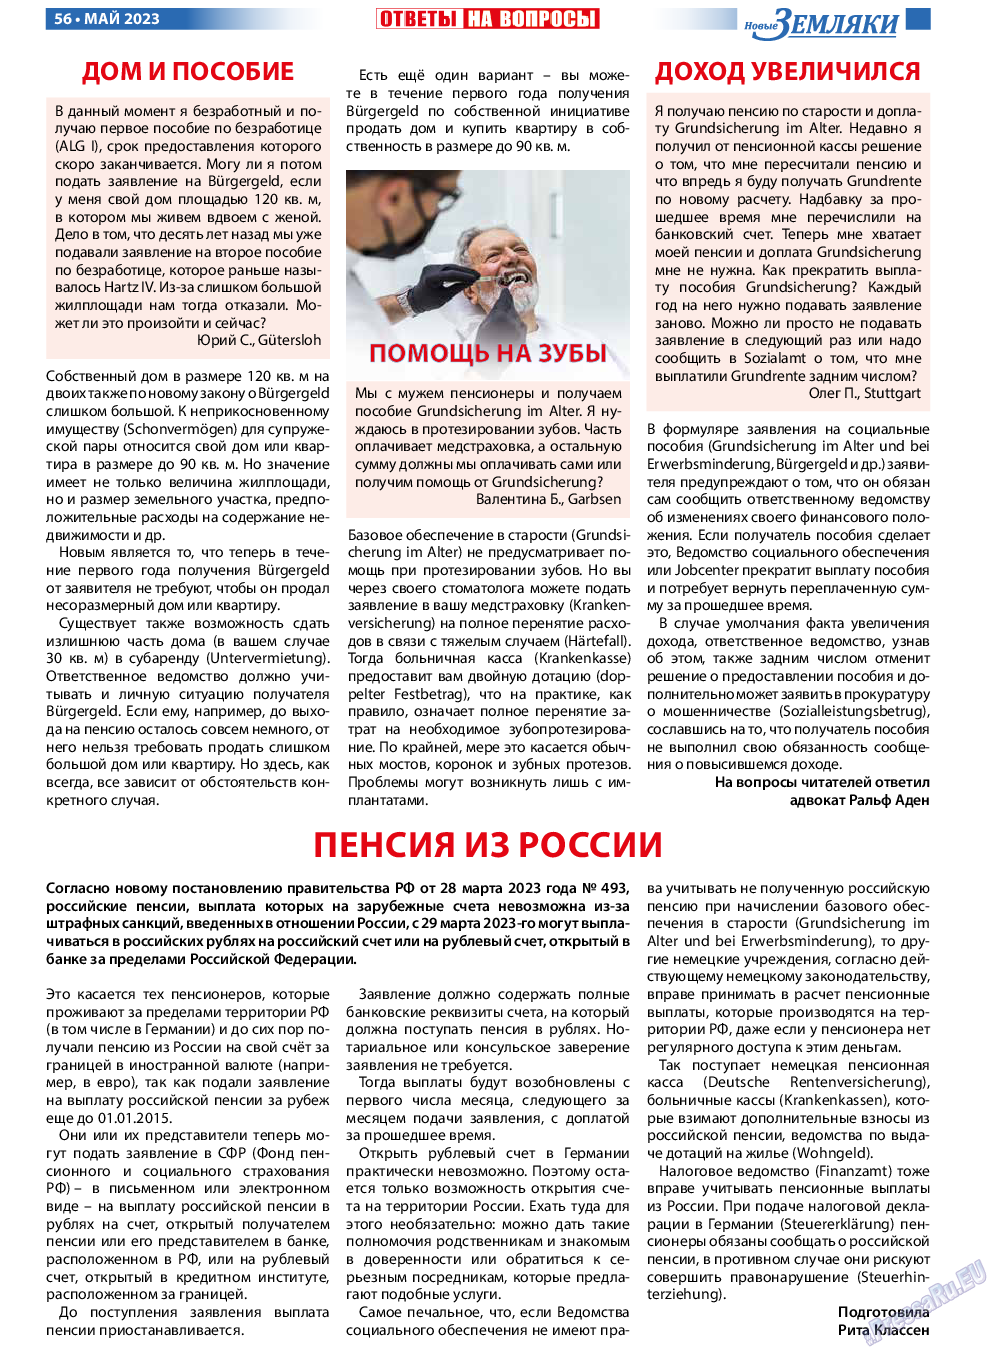 Новые Земляки, газета. 2023 №5 стр.56